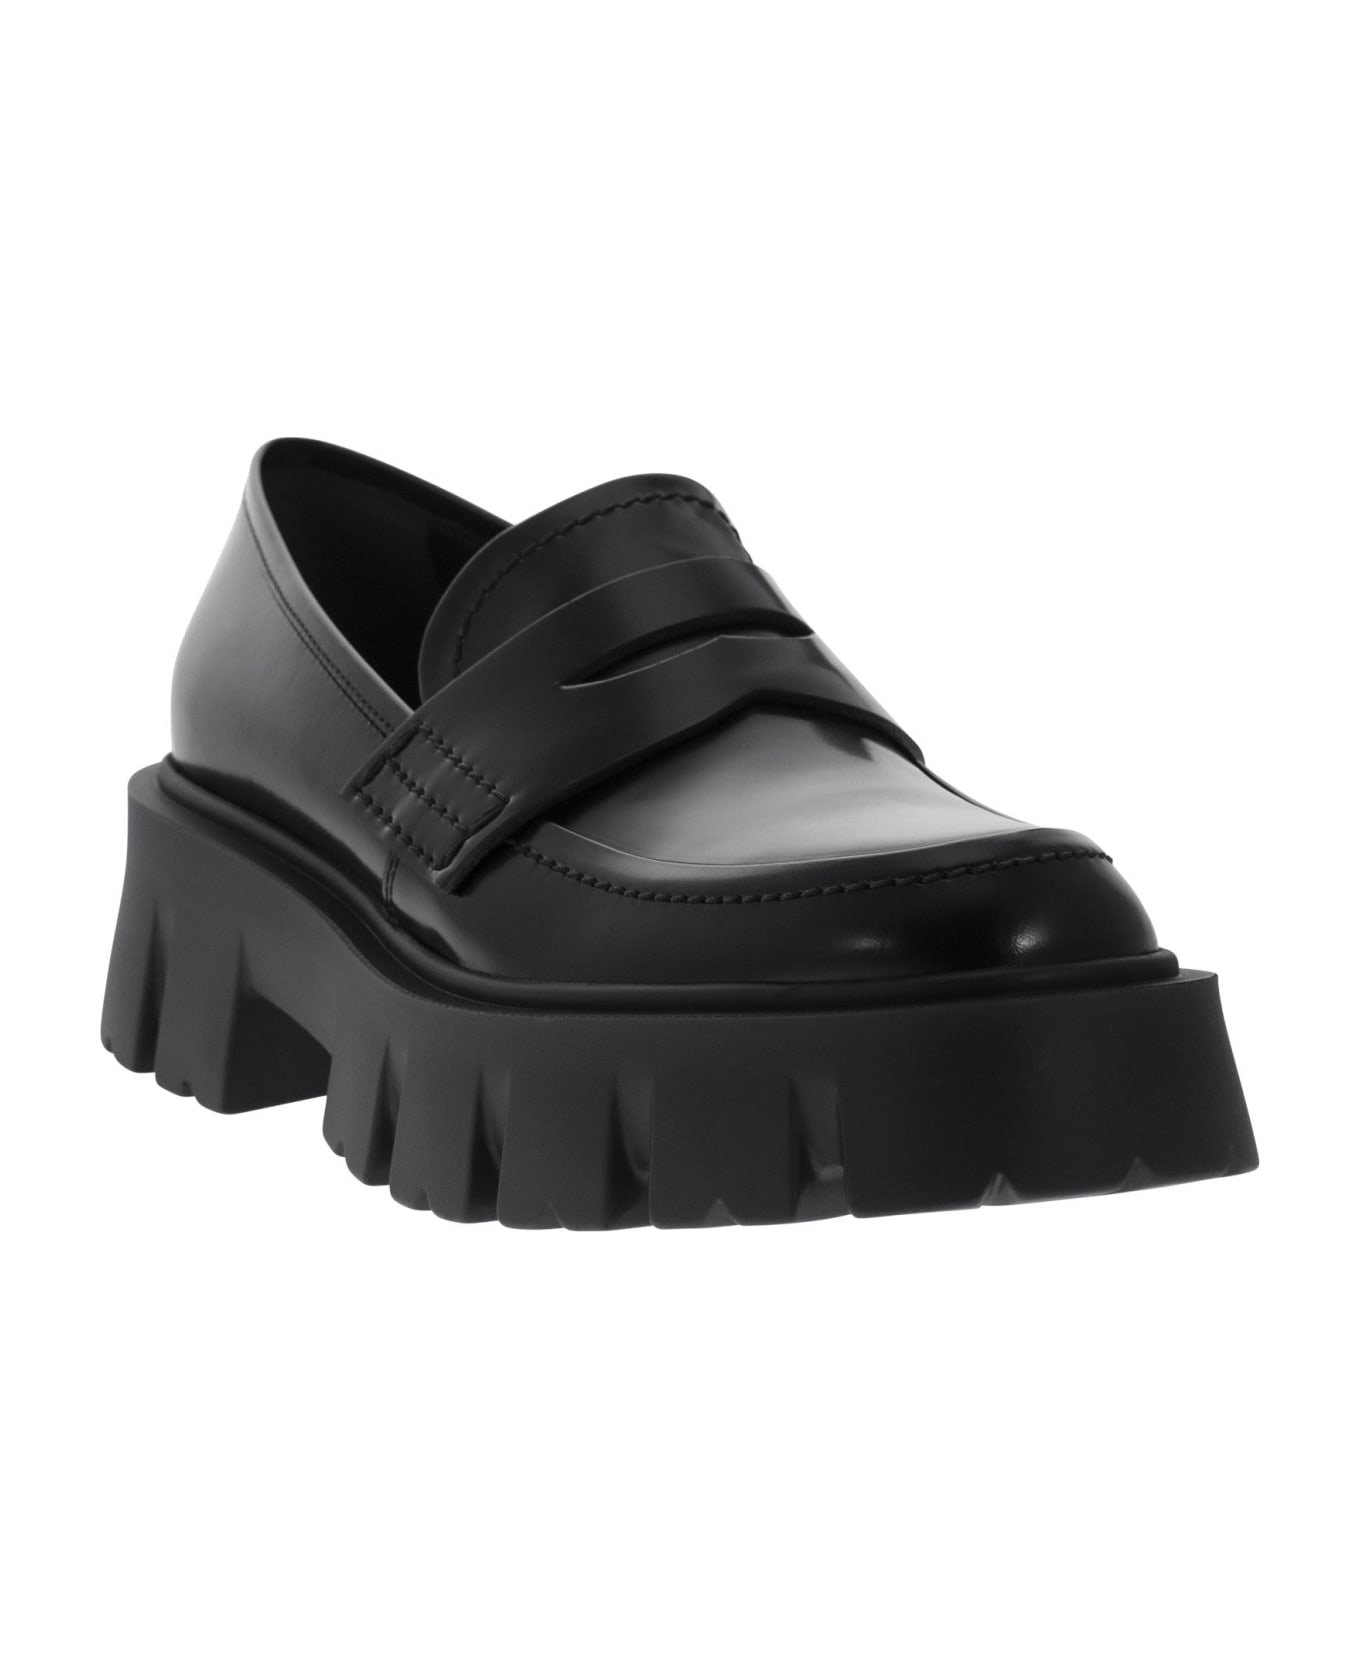 Premiata Ascot - Leather Loafers - Black